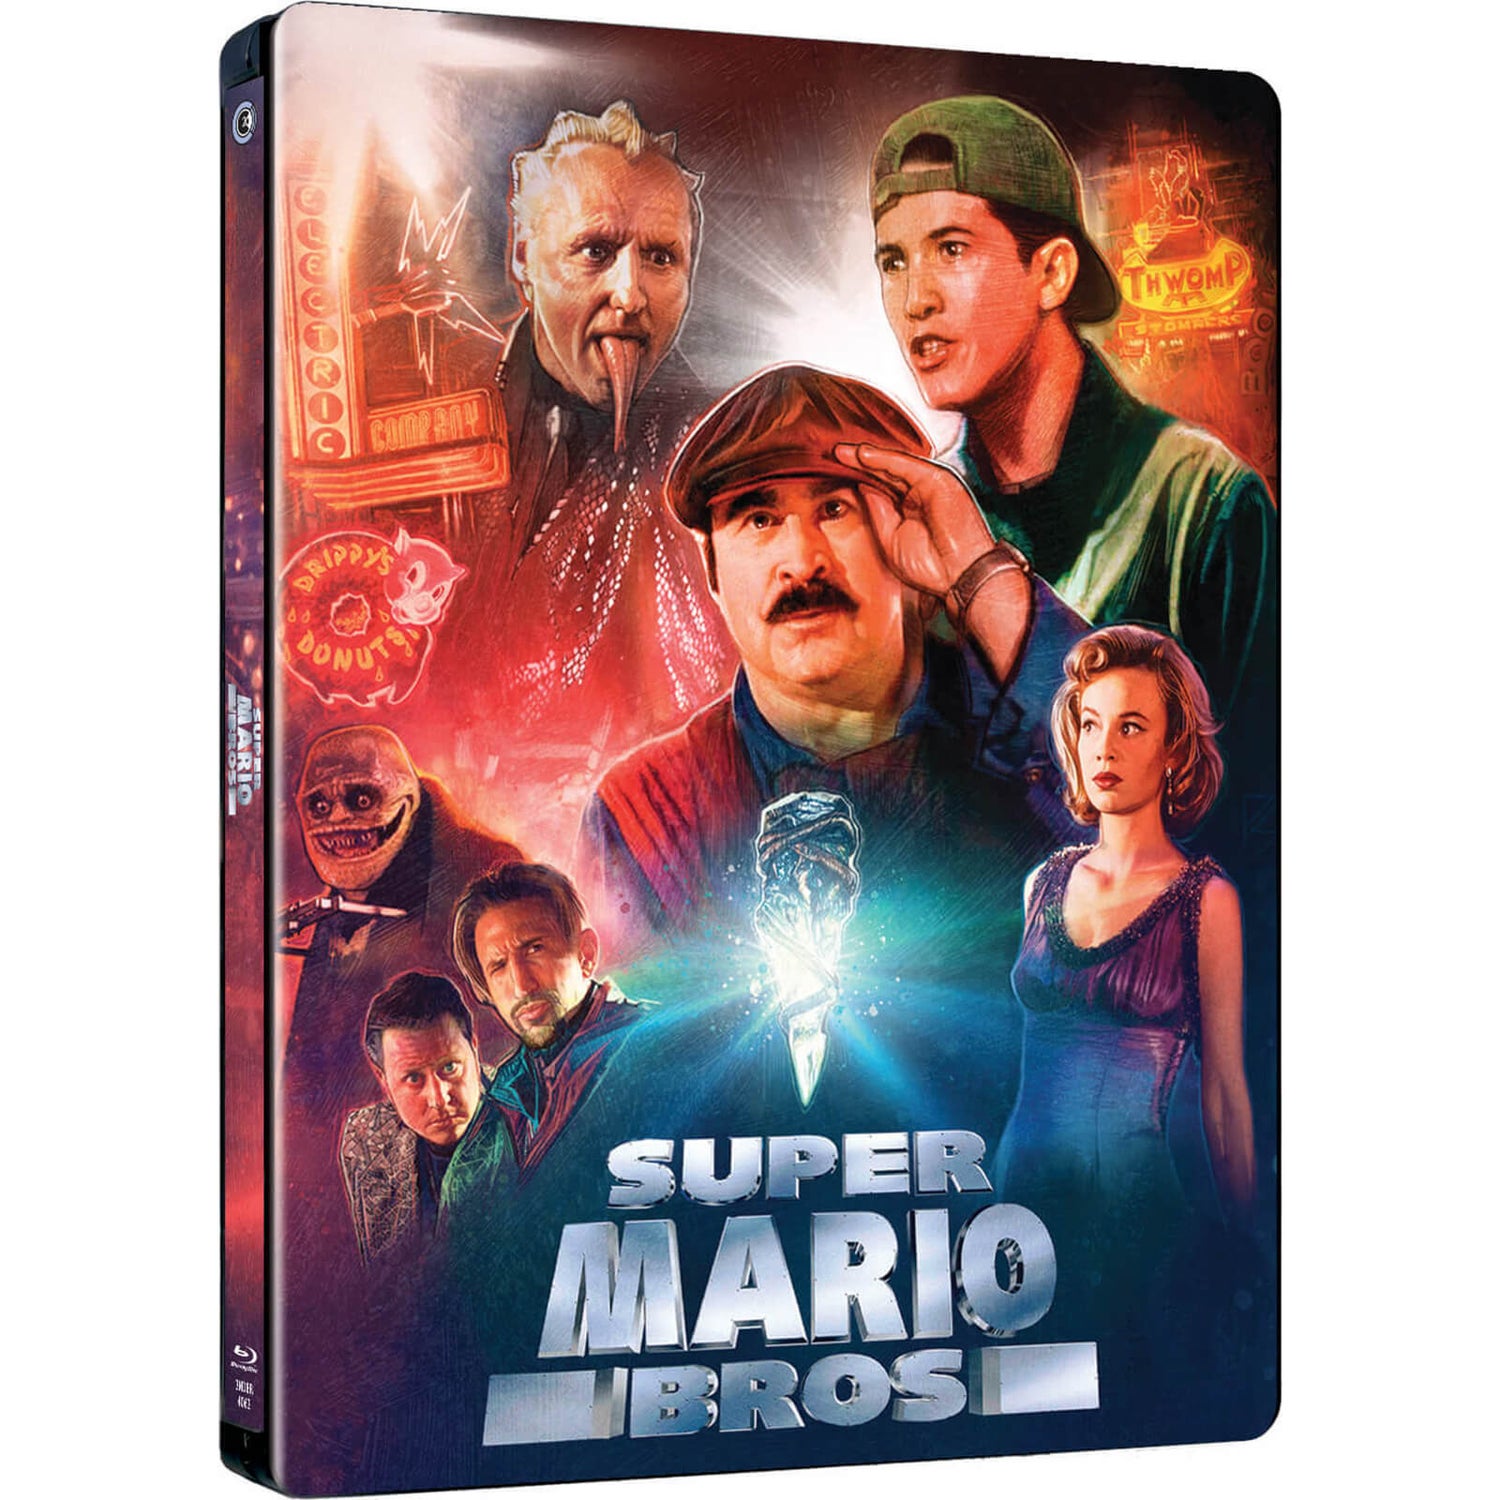 The Super Mario Bros. Movie Limited Steelbook edition